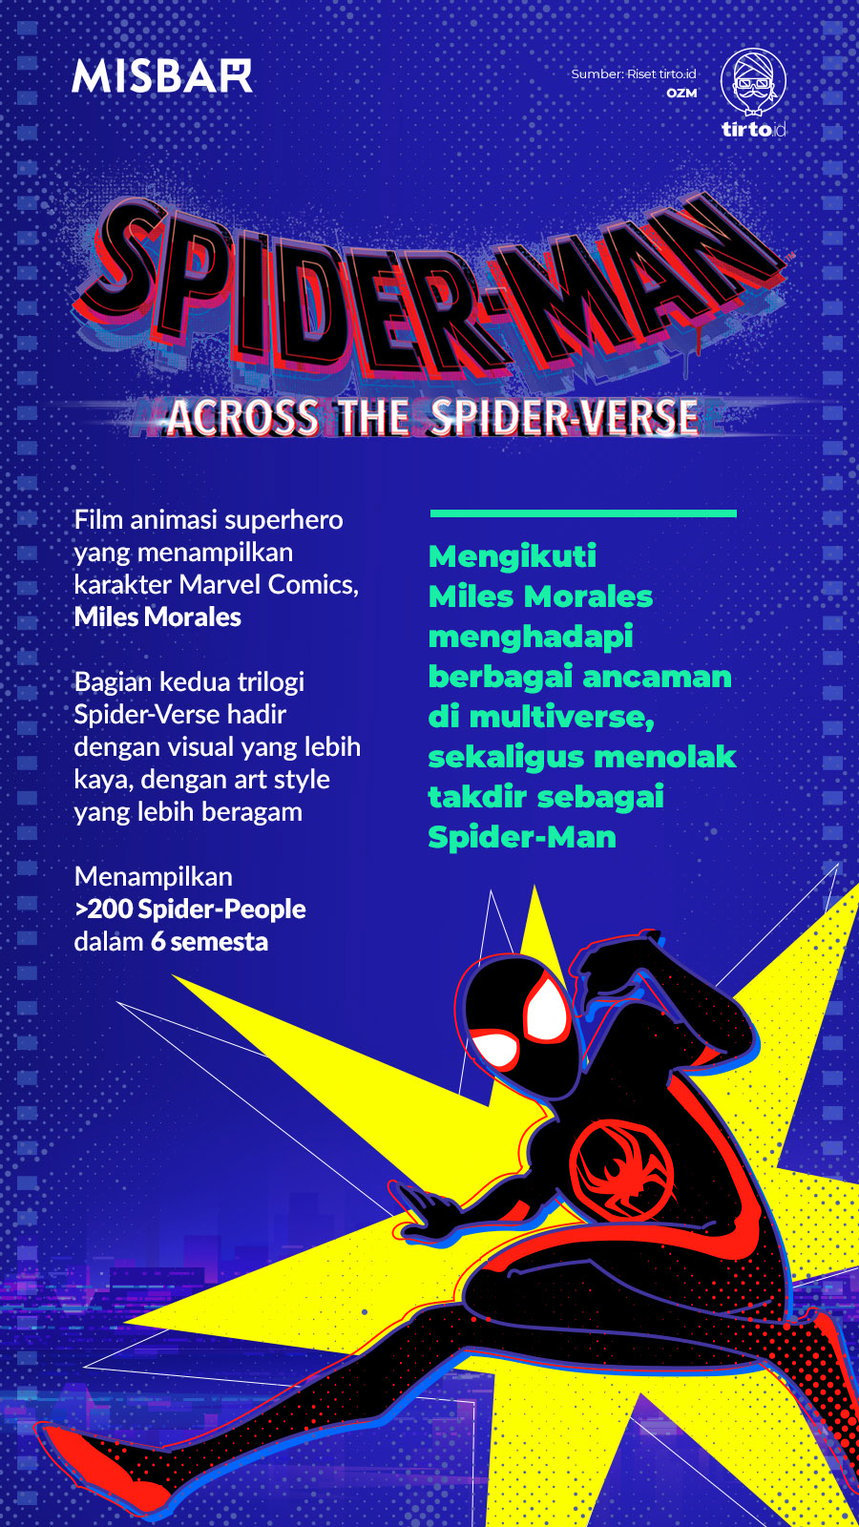 Infografik Misbar Spider Man Across the Spider Verse